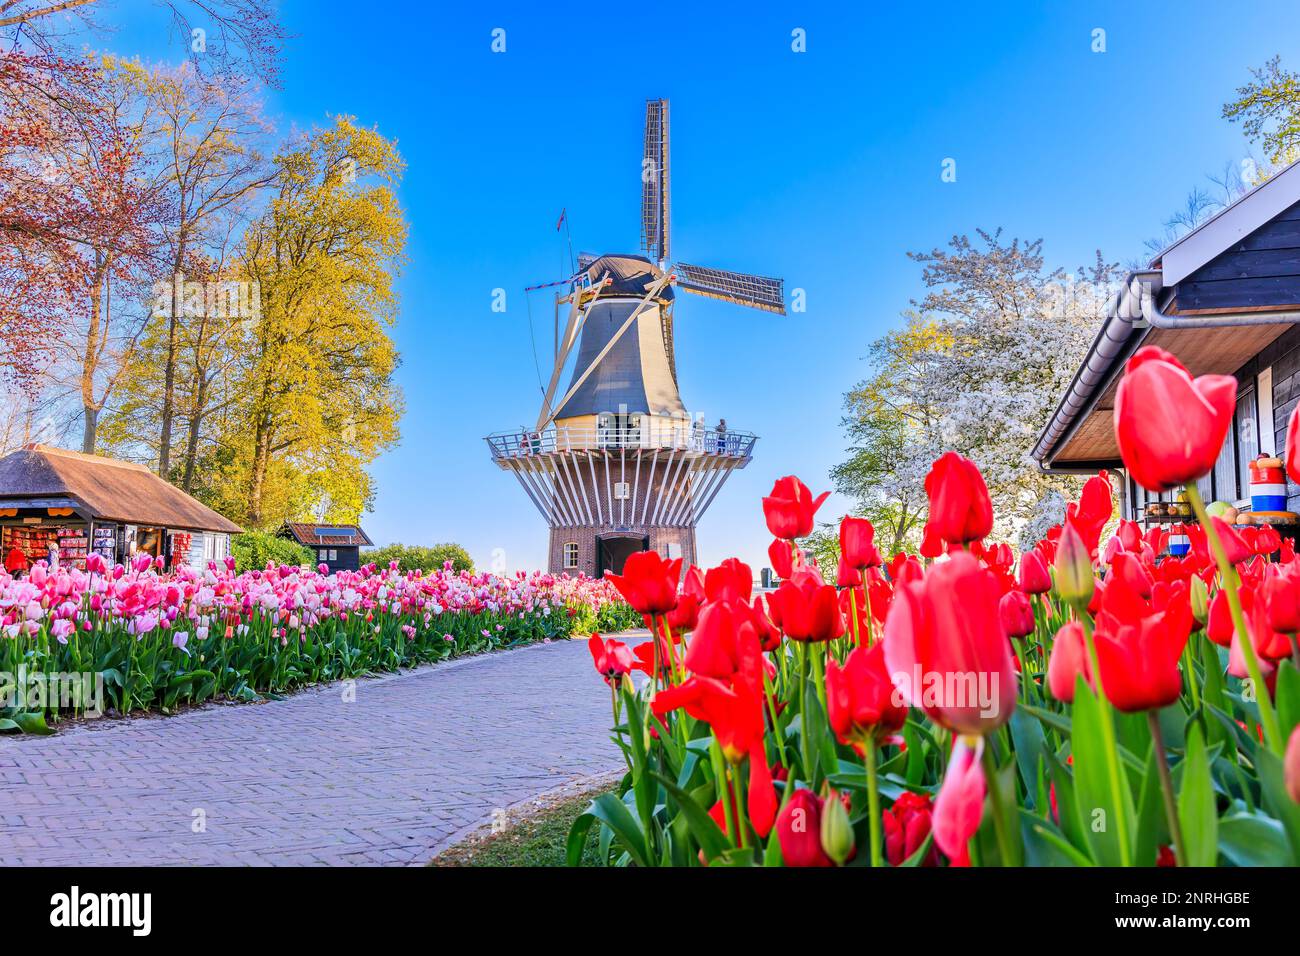 Blühende farbenfrohe Tulpen blühten im öffentlichen Blumengarten mit Windmühle. Lisse, Holland, Niederlande. Stockfoto